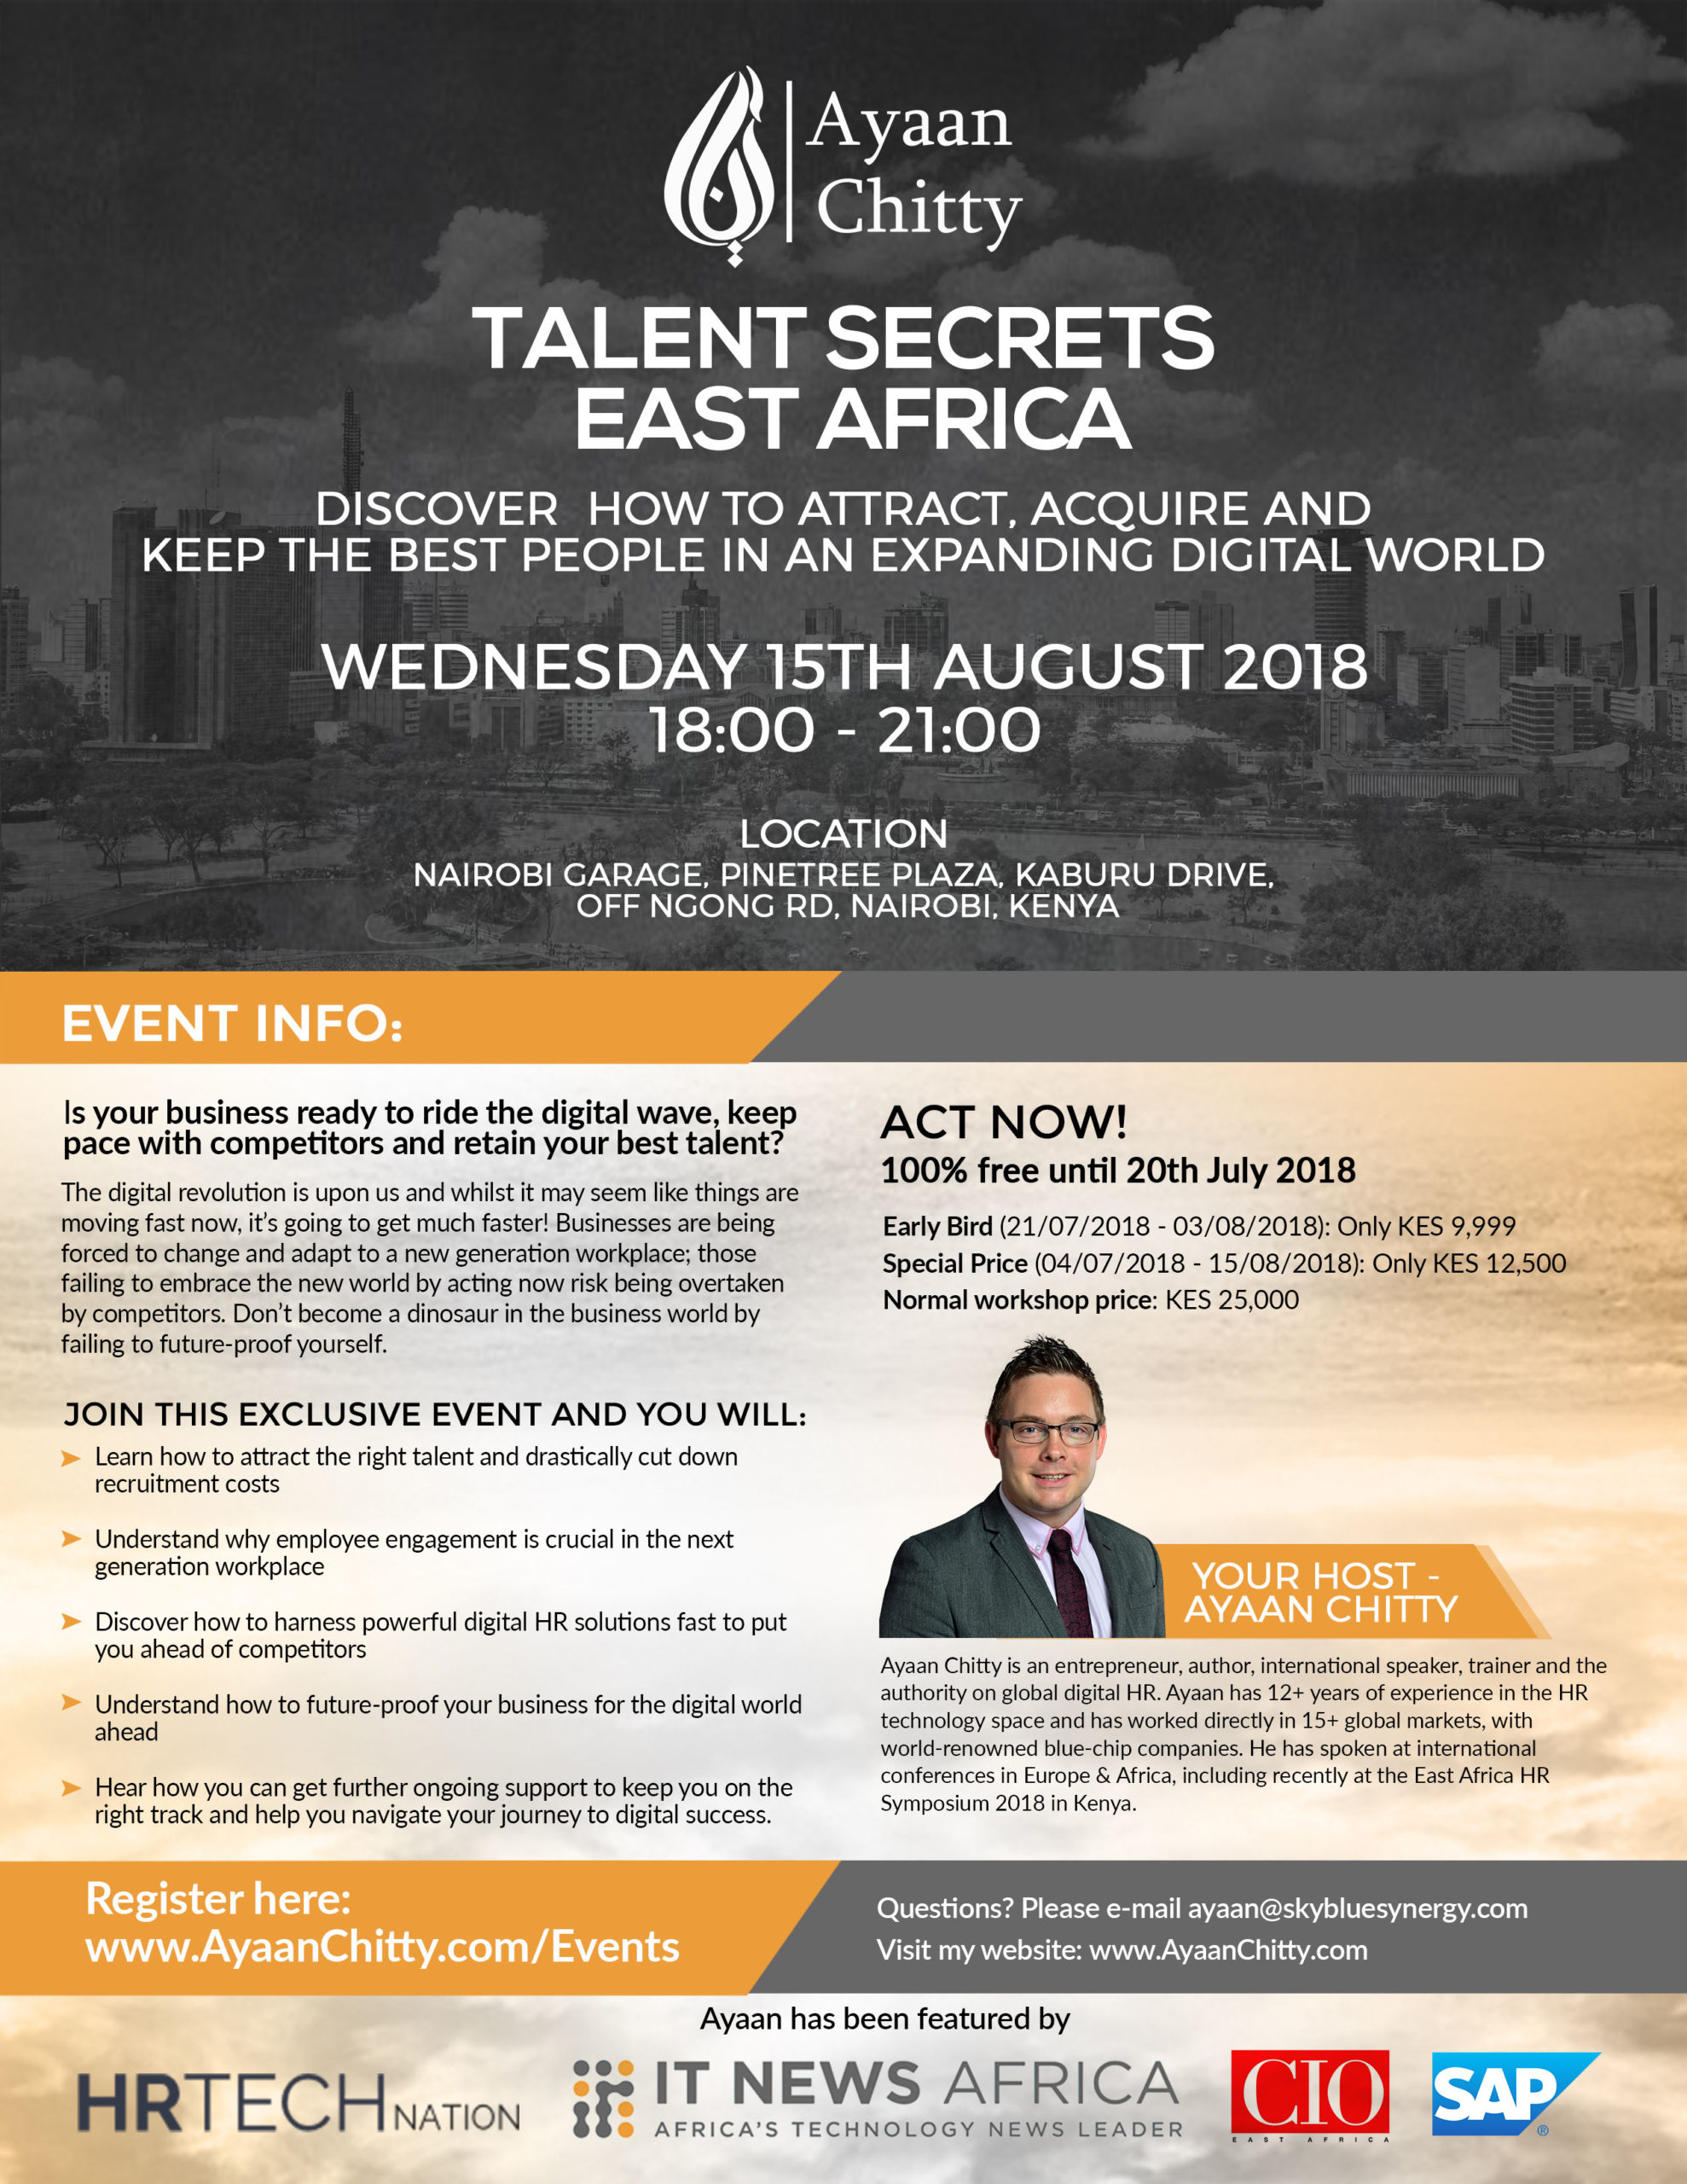 HR Tech Africa - Talent Secrets East Africa, Nairobi, Kenya